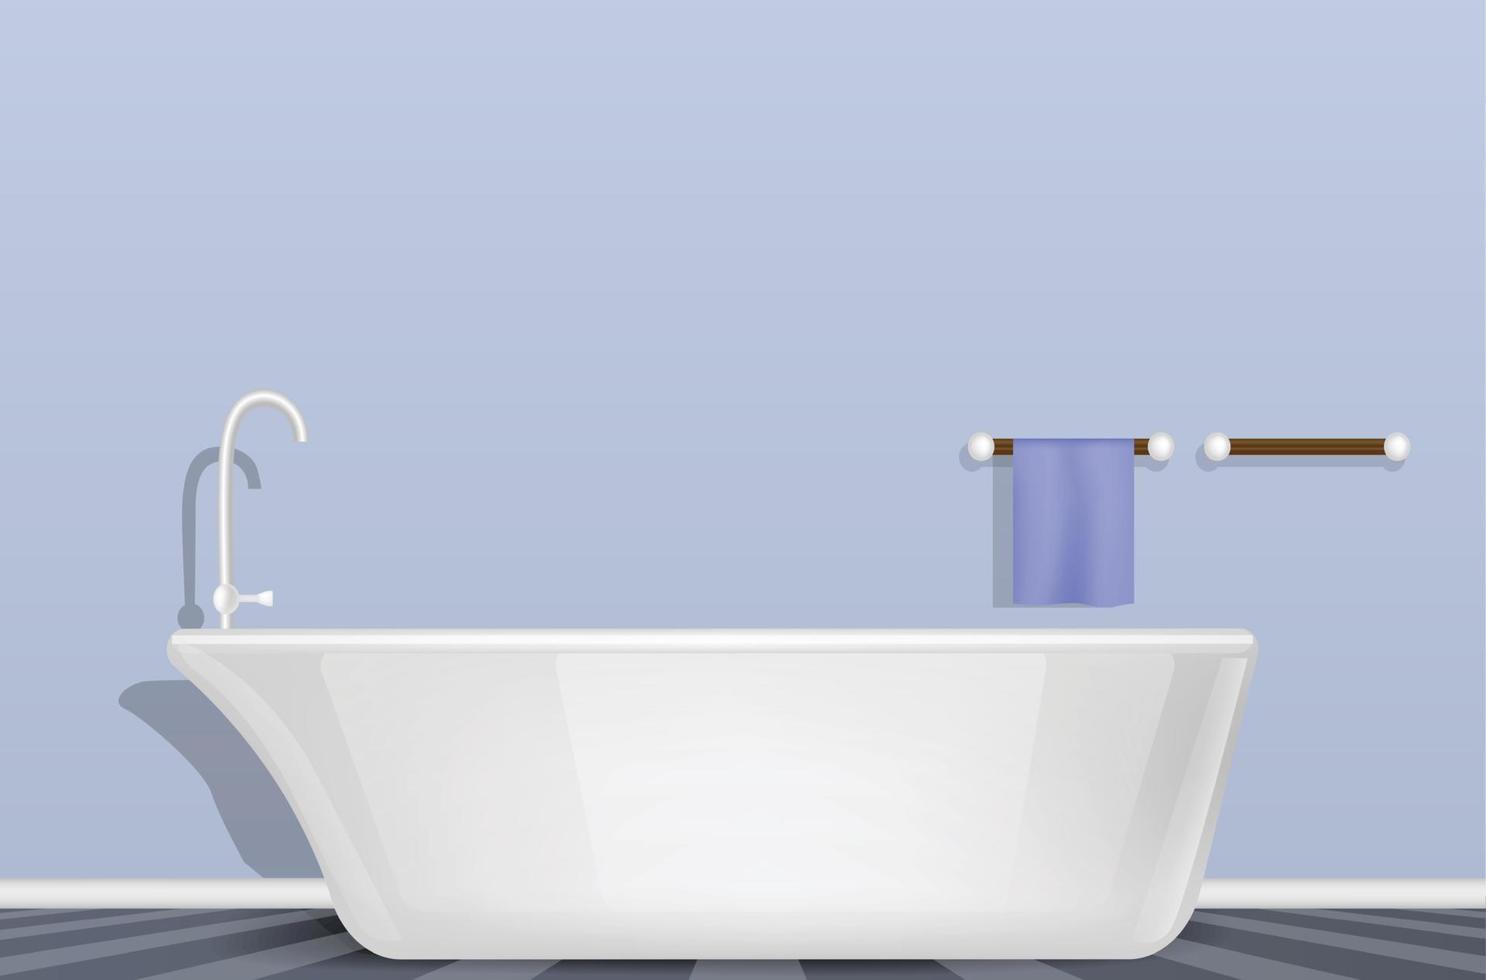 vasca da bagno in bagno concetto di fondo, stile realistico vettore